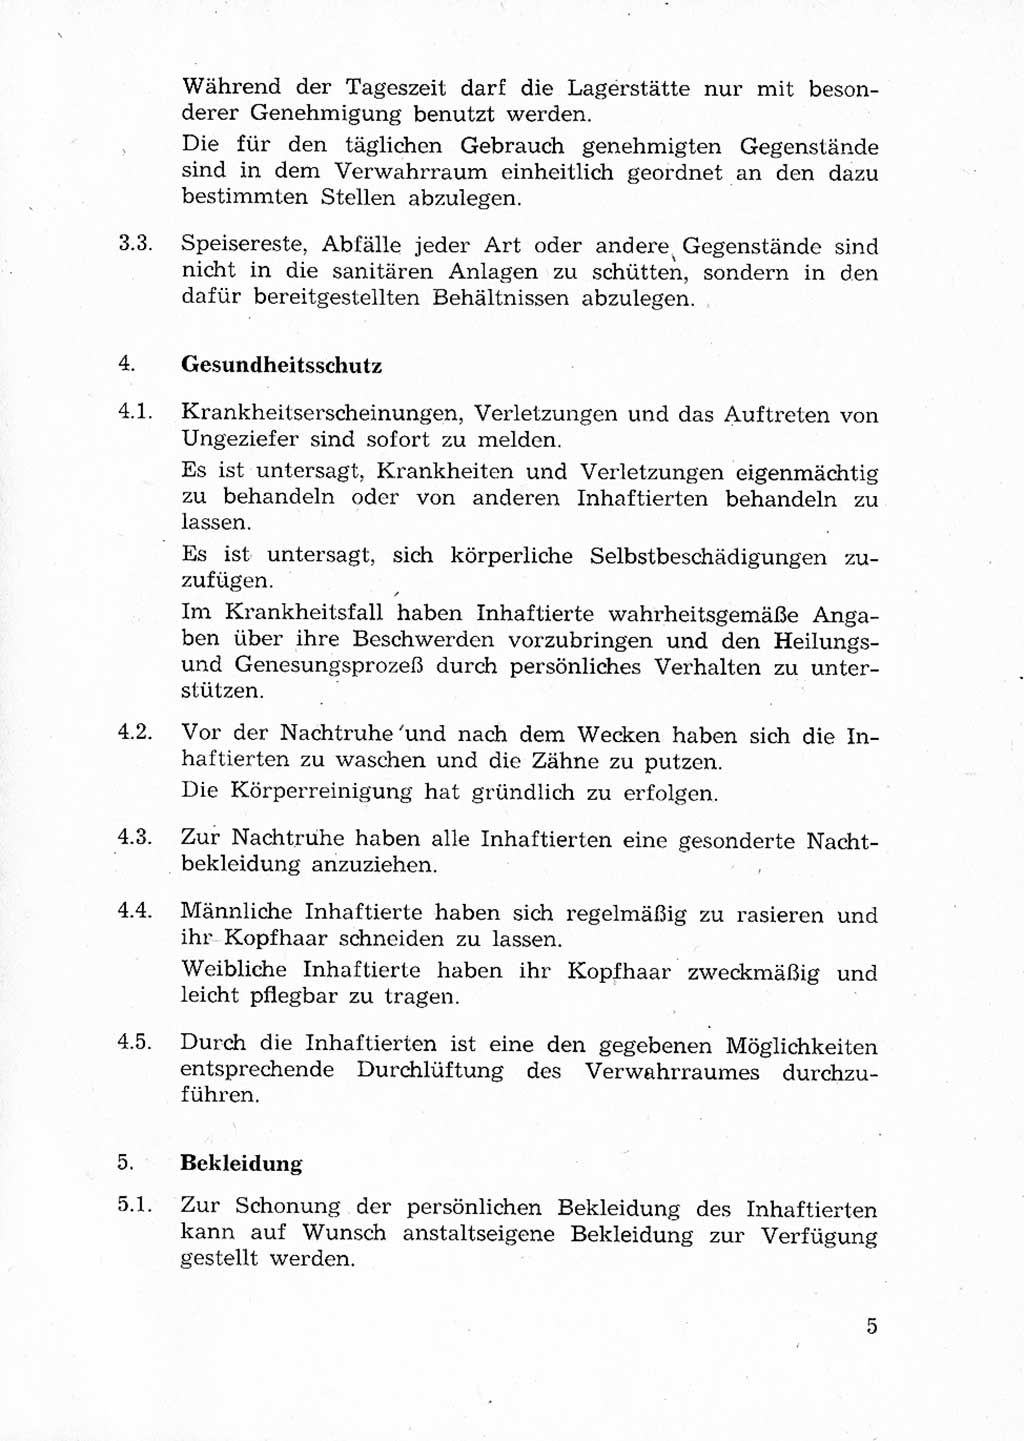 Ordnungs- und Verhaltensregeln (Hausordnung) für Inhaftierte in den Untersuchungshaftanstalten (UHA) [Ministerium für Staatssicherheit (MfS), Deutsche Demokratische Republik (DDR)] 1971, Seite 5 (H.-Ordn. UHA MfS DDR 1971, S. 5)